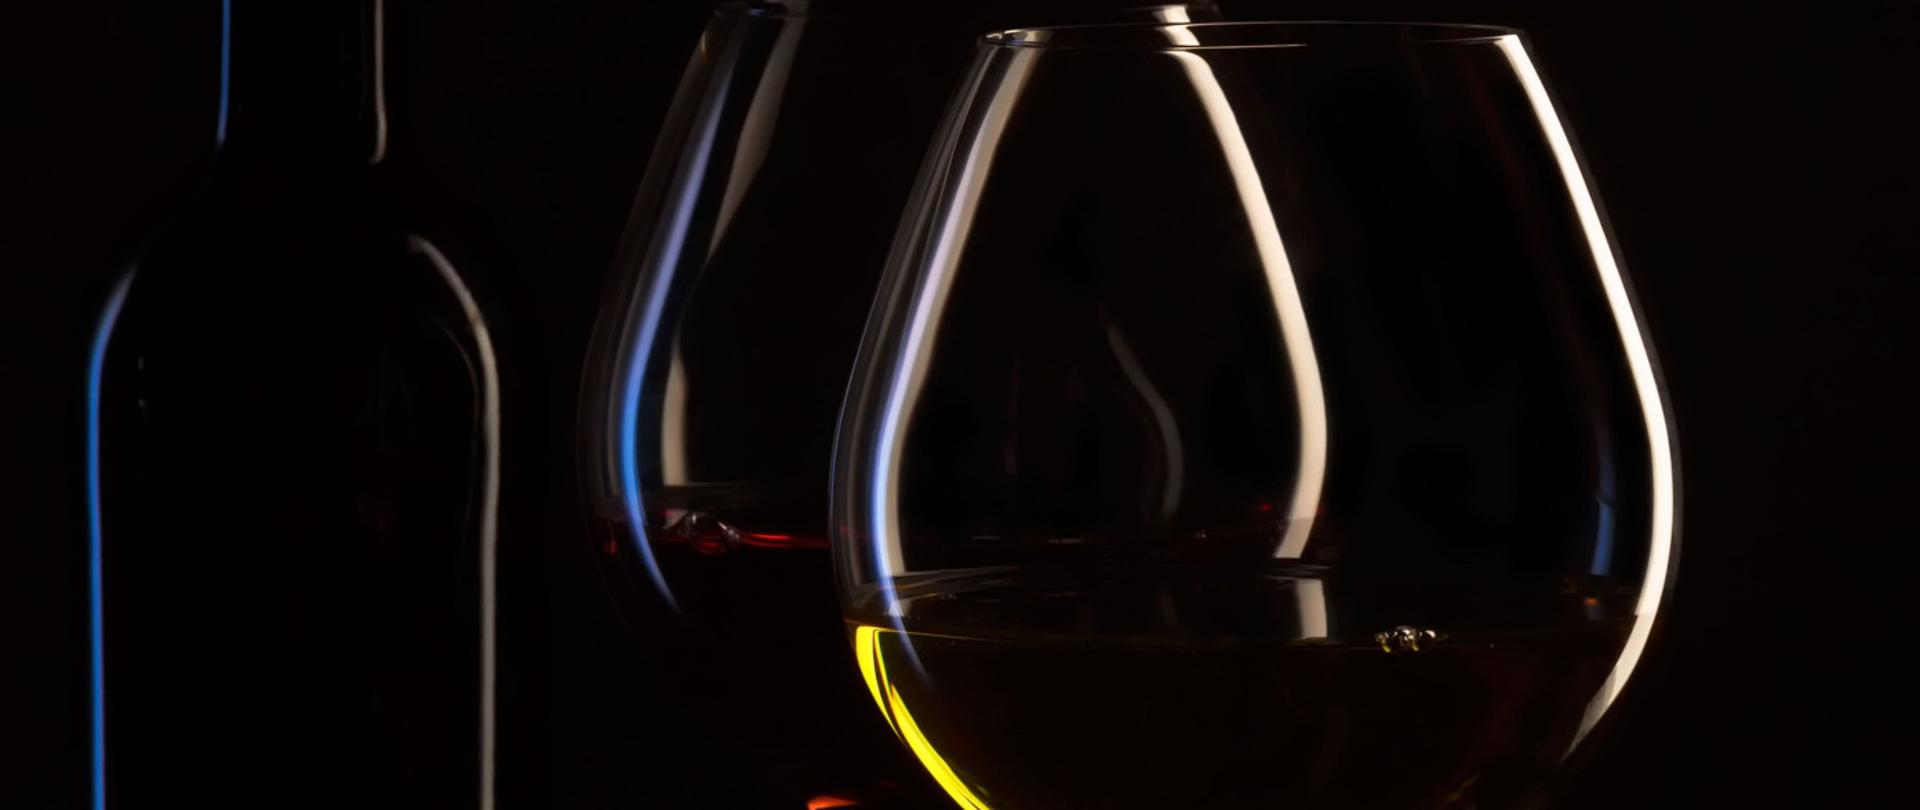 Butelka wina i dwa napełnione kieliszki do wina